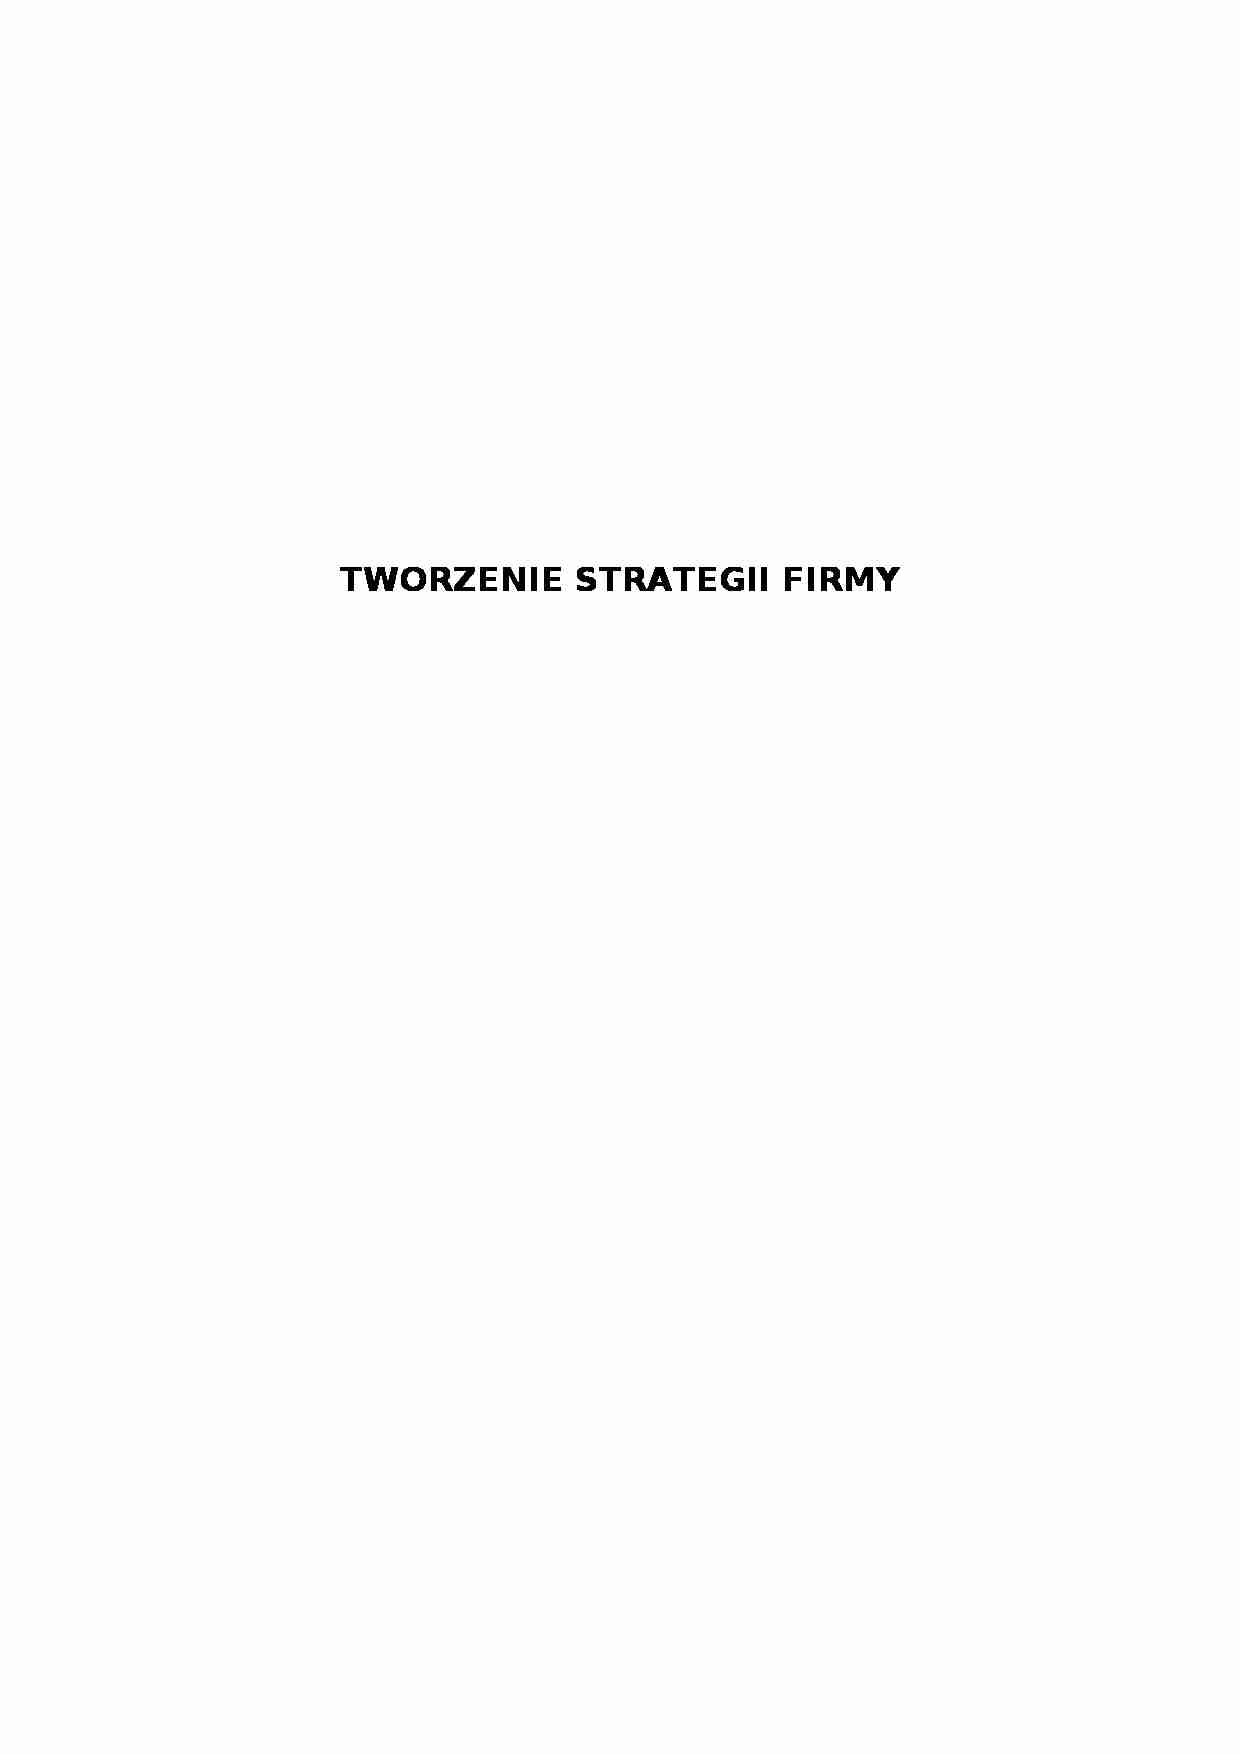 Strategia firmy - strona 1